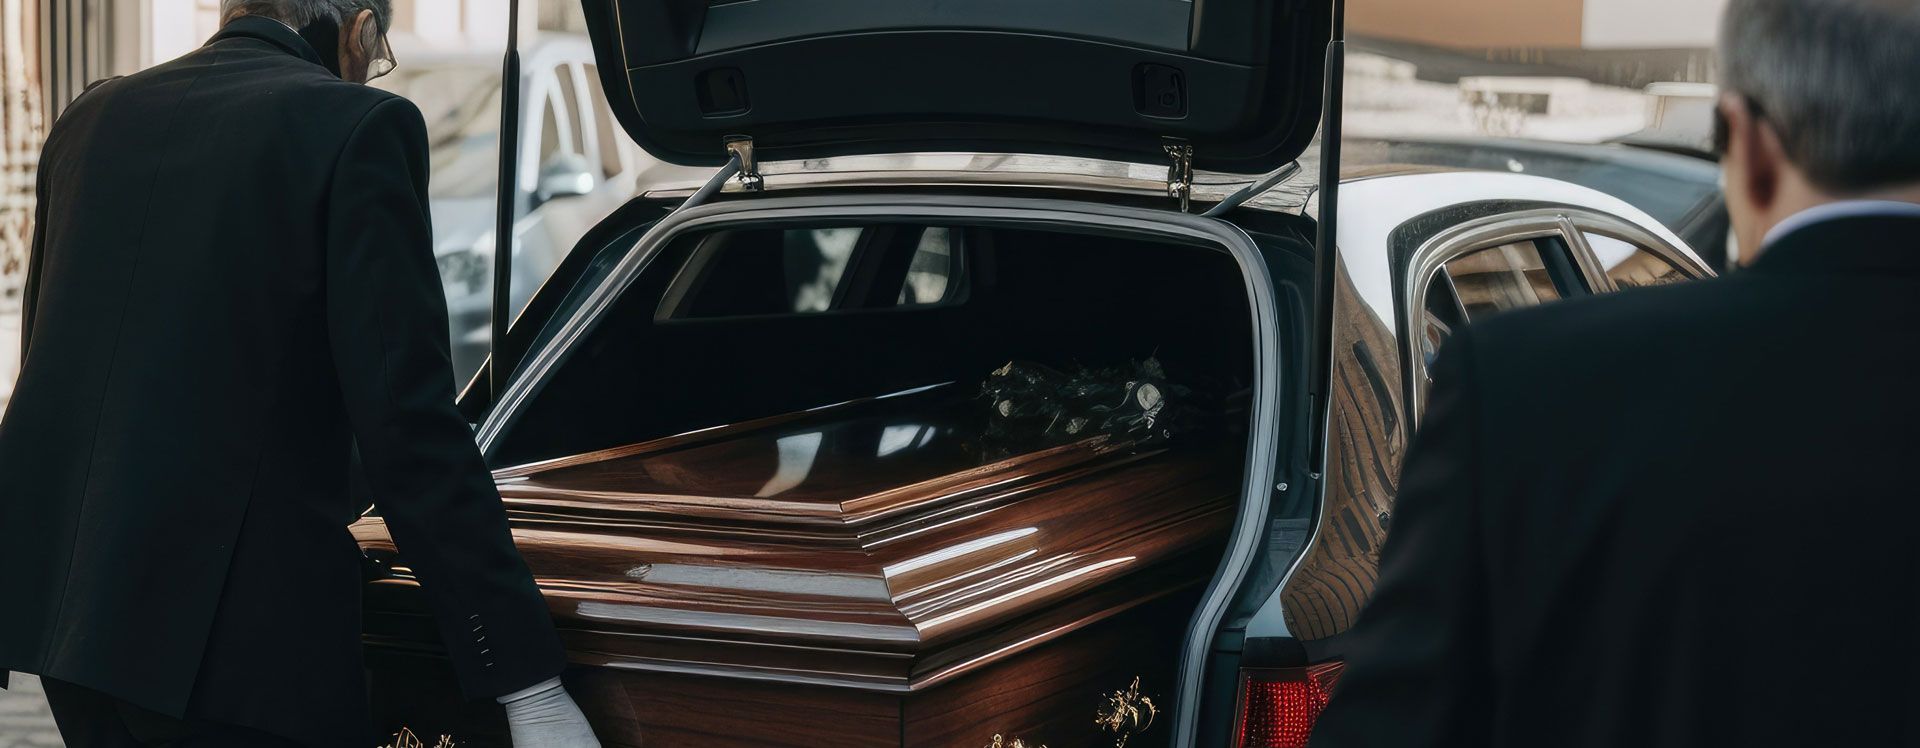 Mise en place d'un cercueil dans le coffre d'un véhicule de transport funéraire